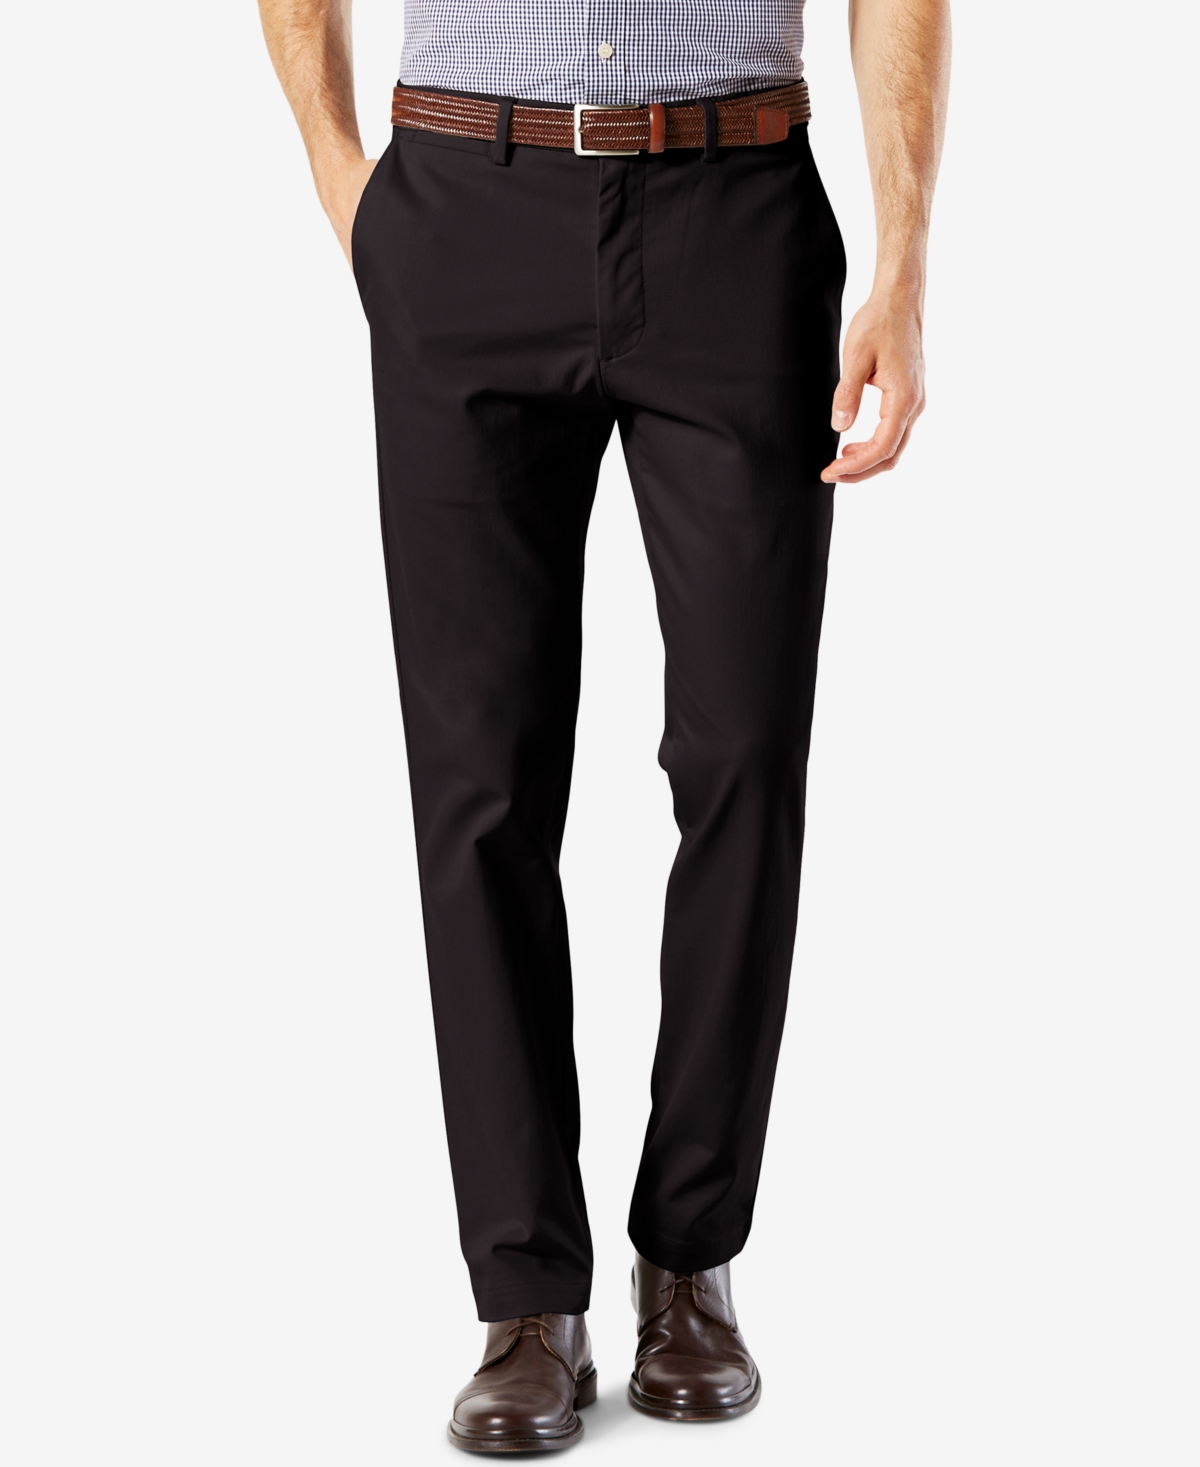 R De neiging hebben modder Dockers Men's Signature Lux Cotton Slim Fit Stretch Khaki Pants & Reviews -  Pants - Men - Macy's